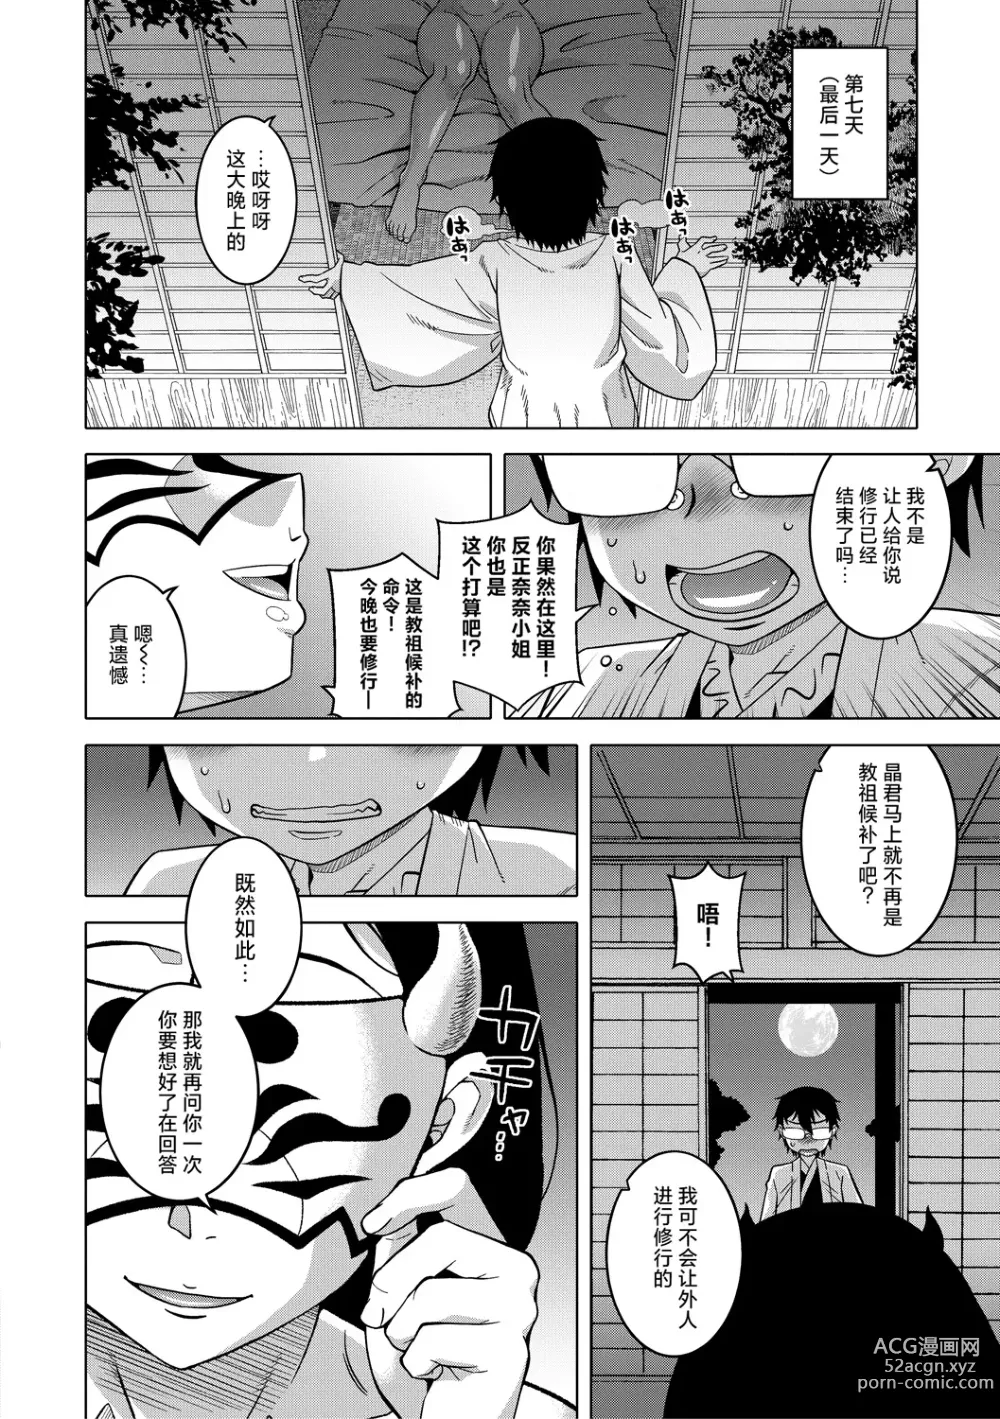 Page 29 of manga Kami-sama no Tsukurikata